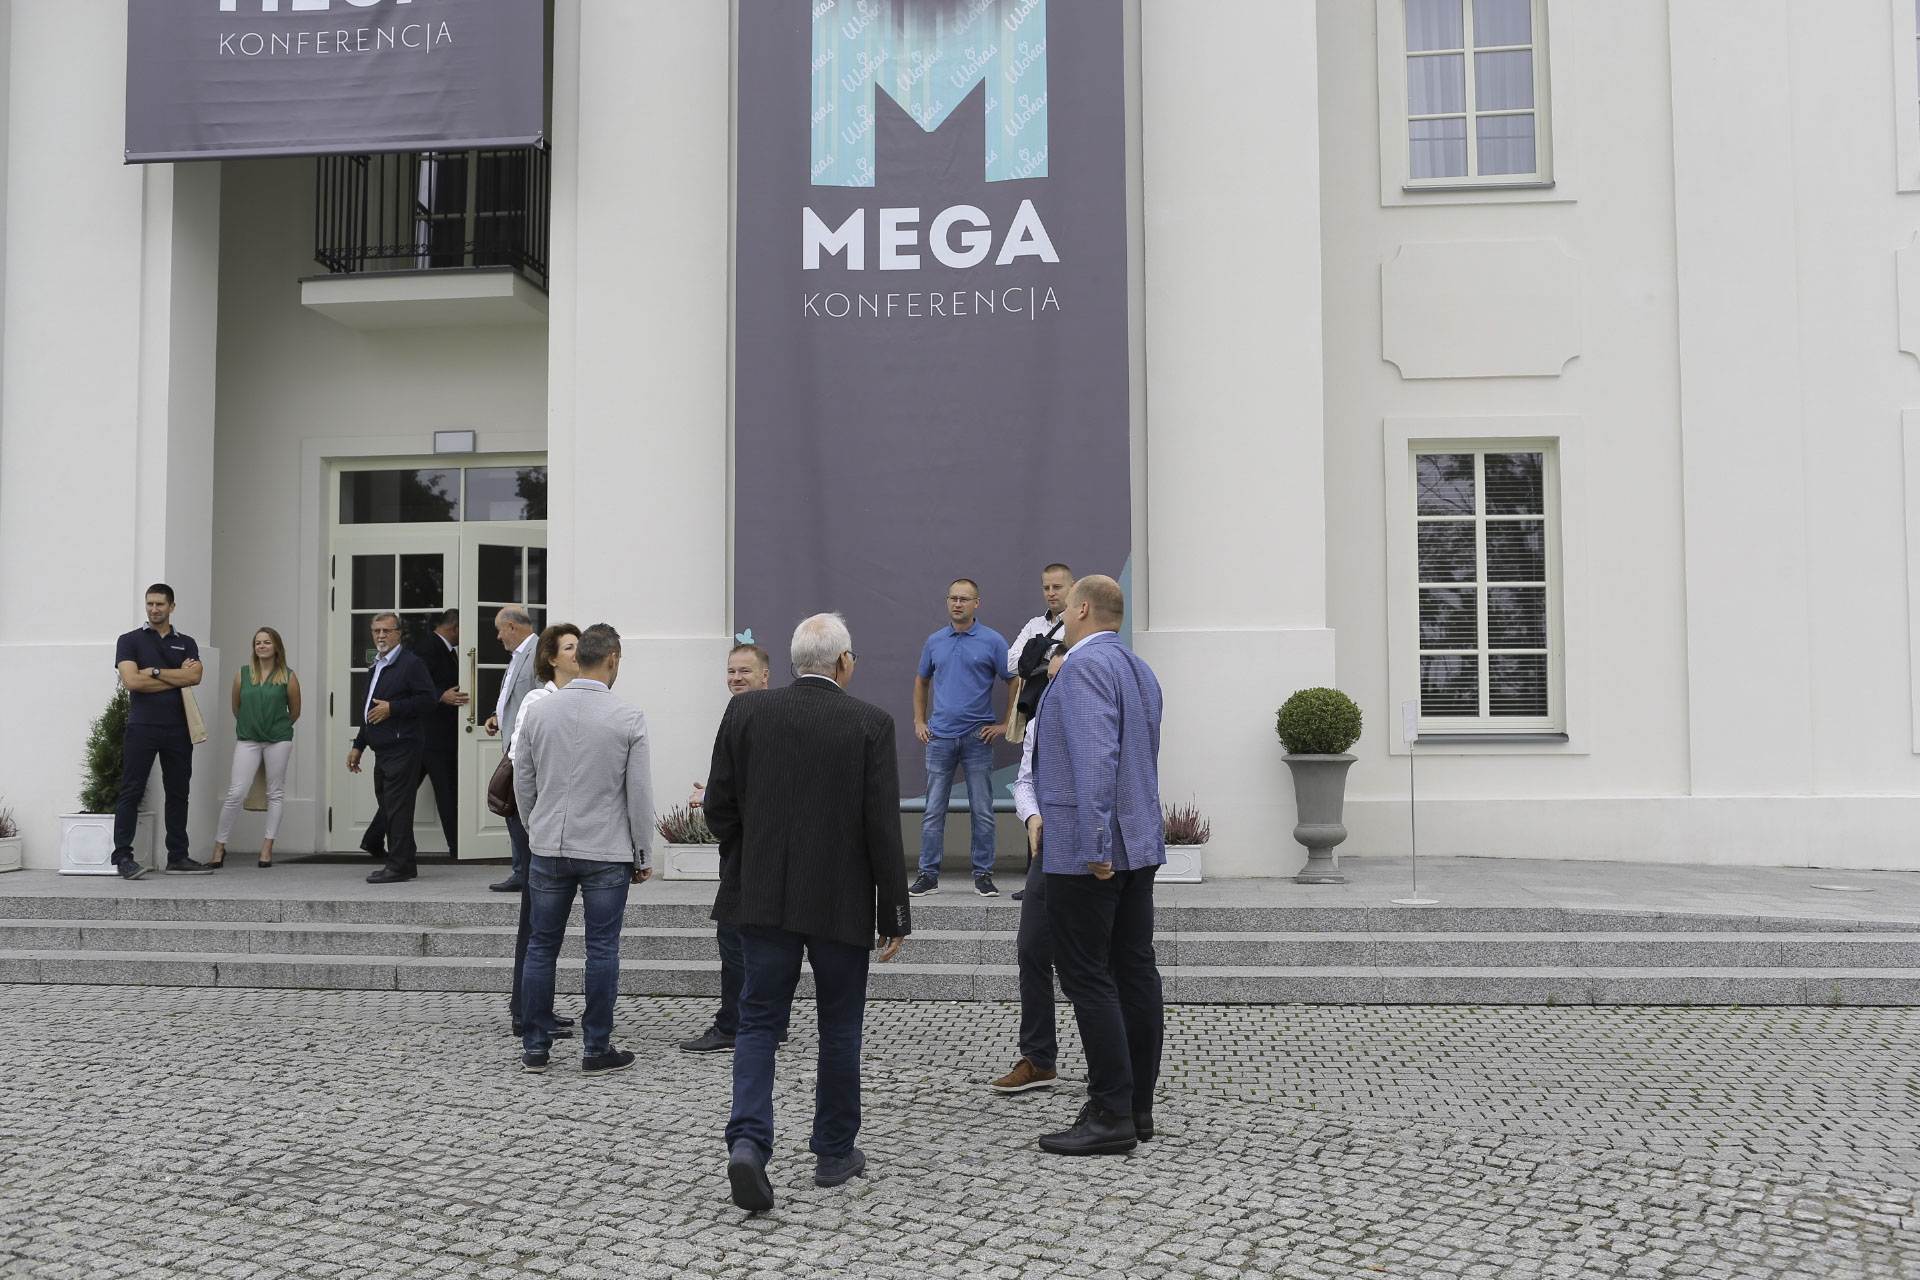 Wokas, Mega Konferencja, 2018